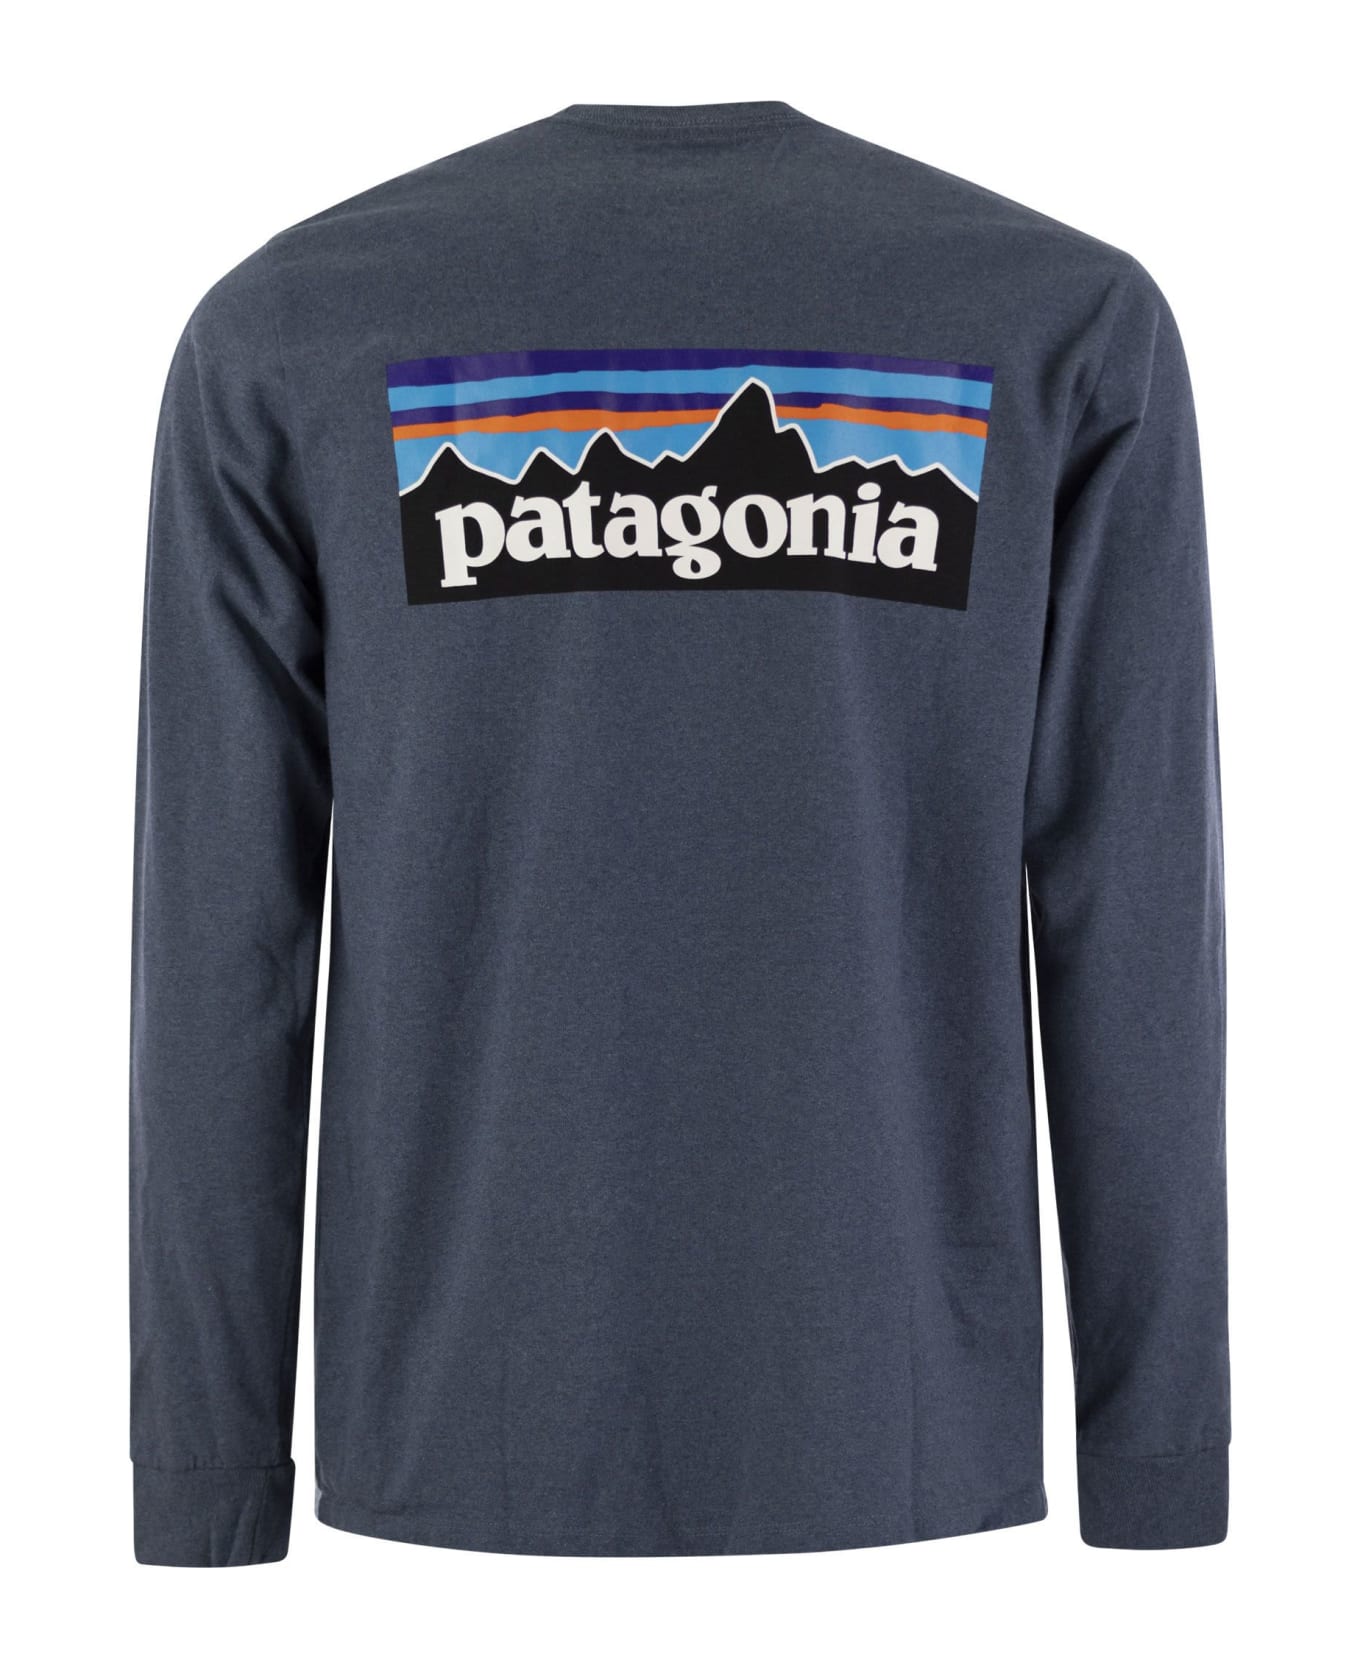 Patagonia T-shirt With Logo Long Sleeves - Avio シャツ